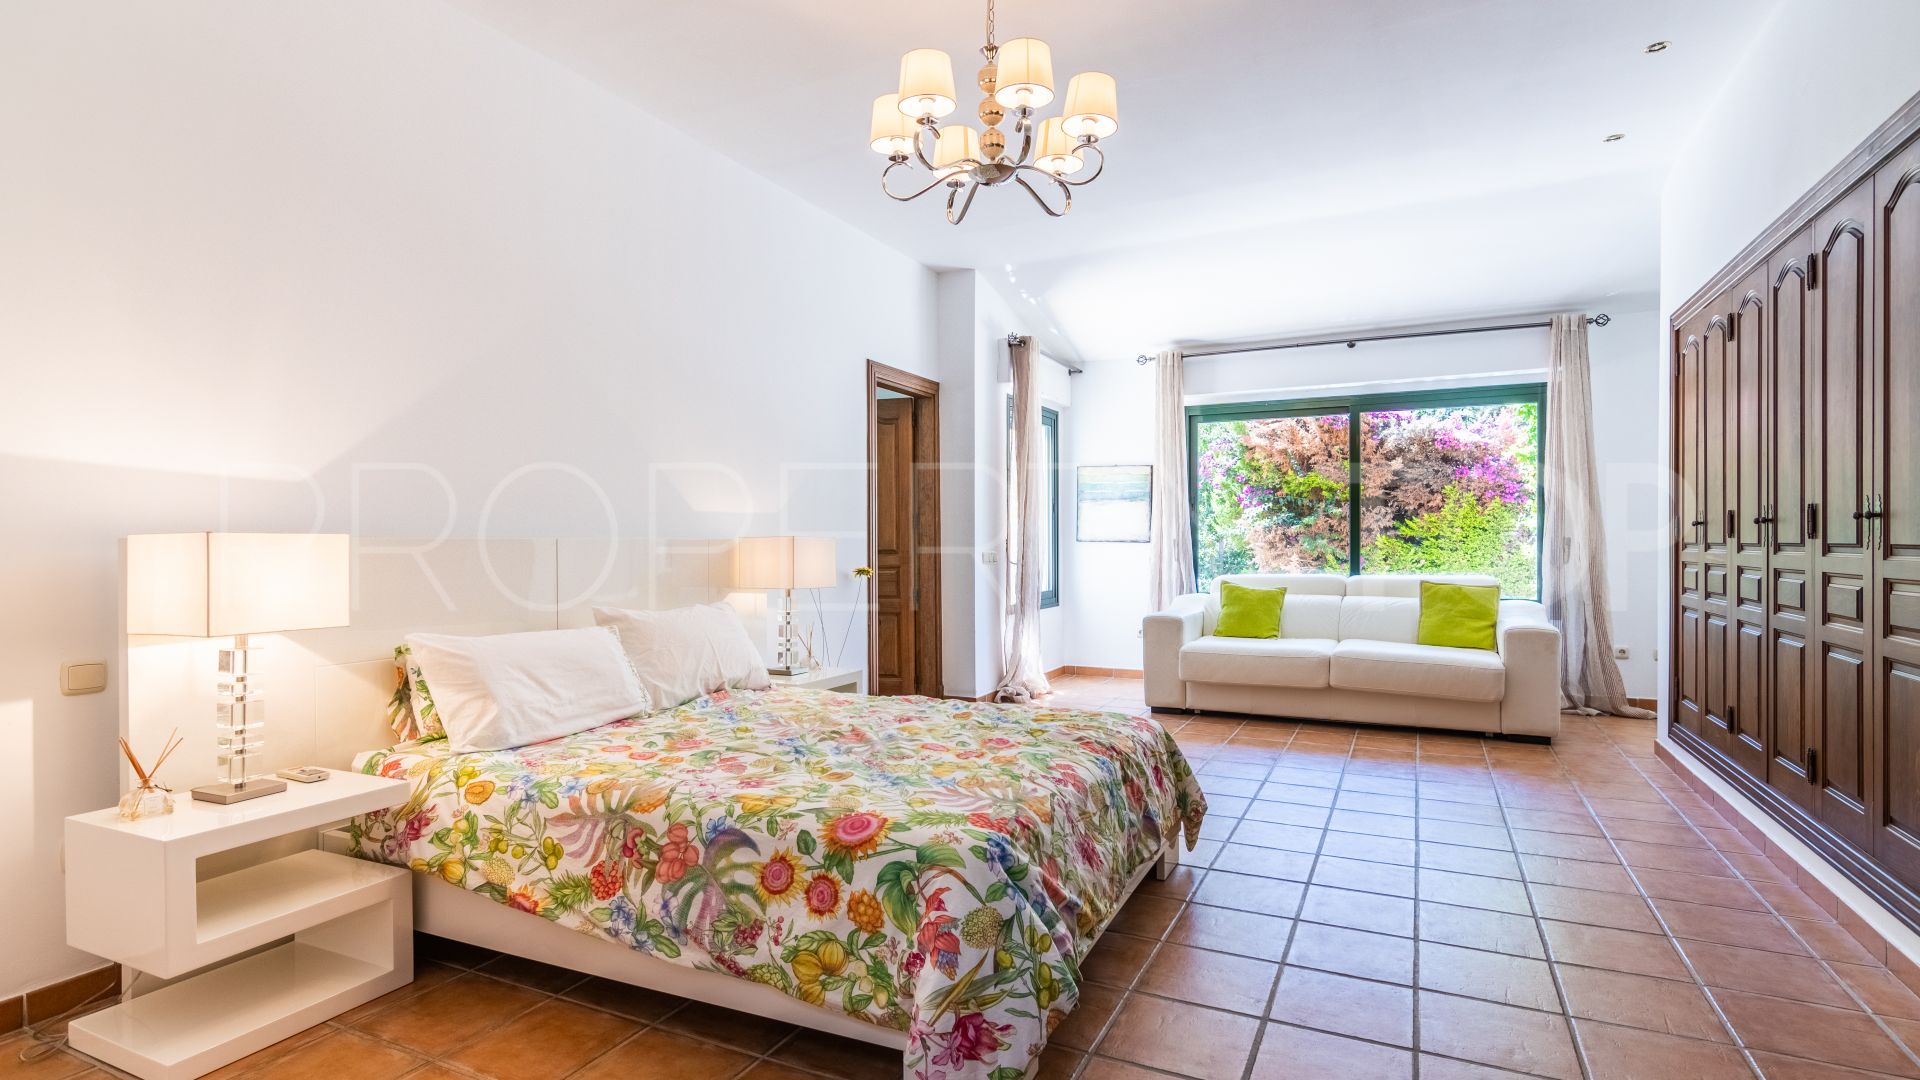 5 bedrooms El Madroñal villa for sale